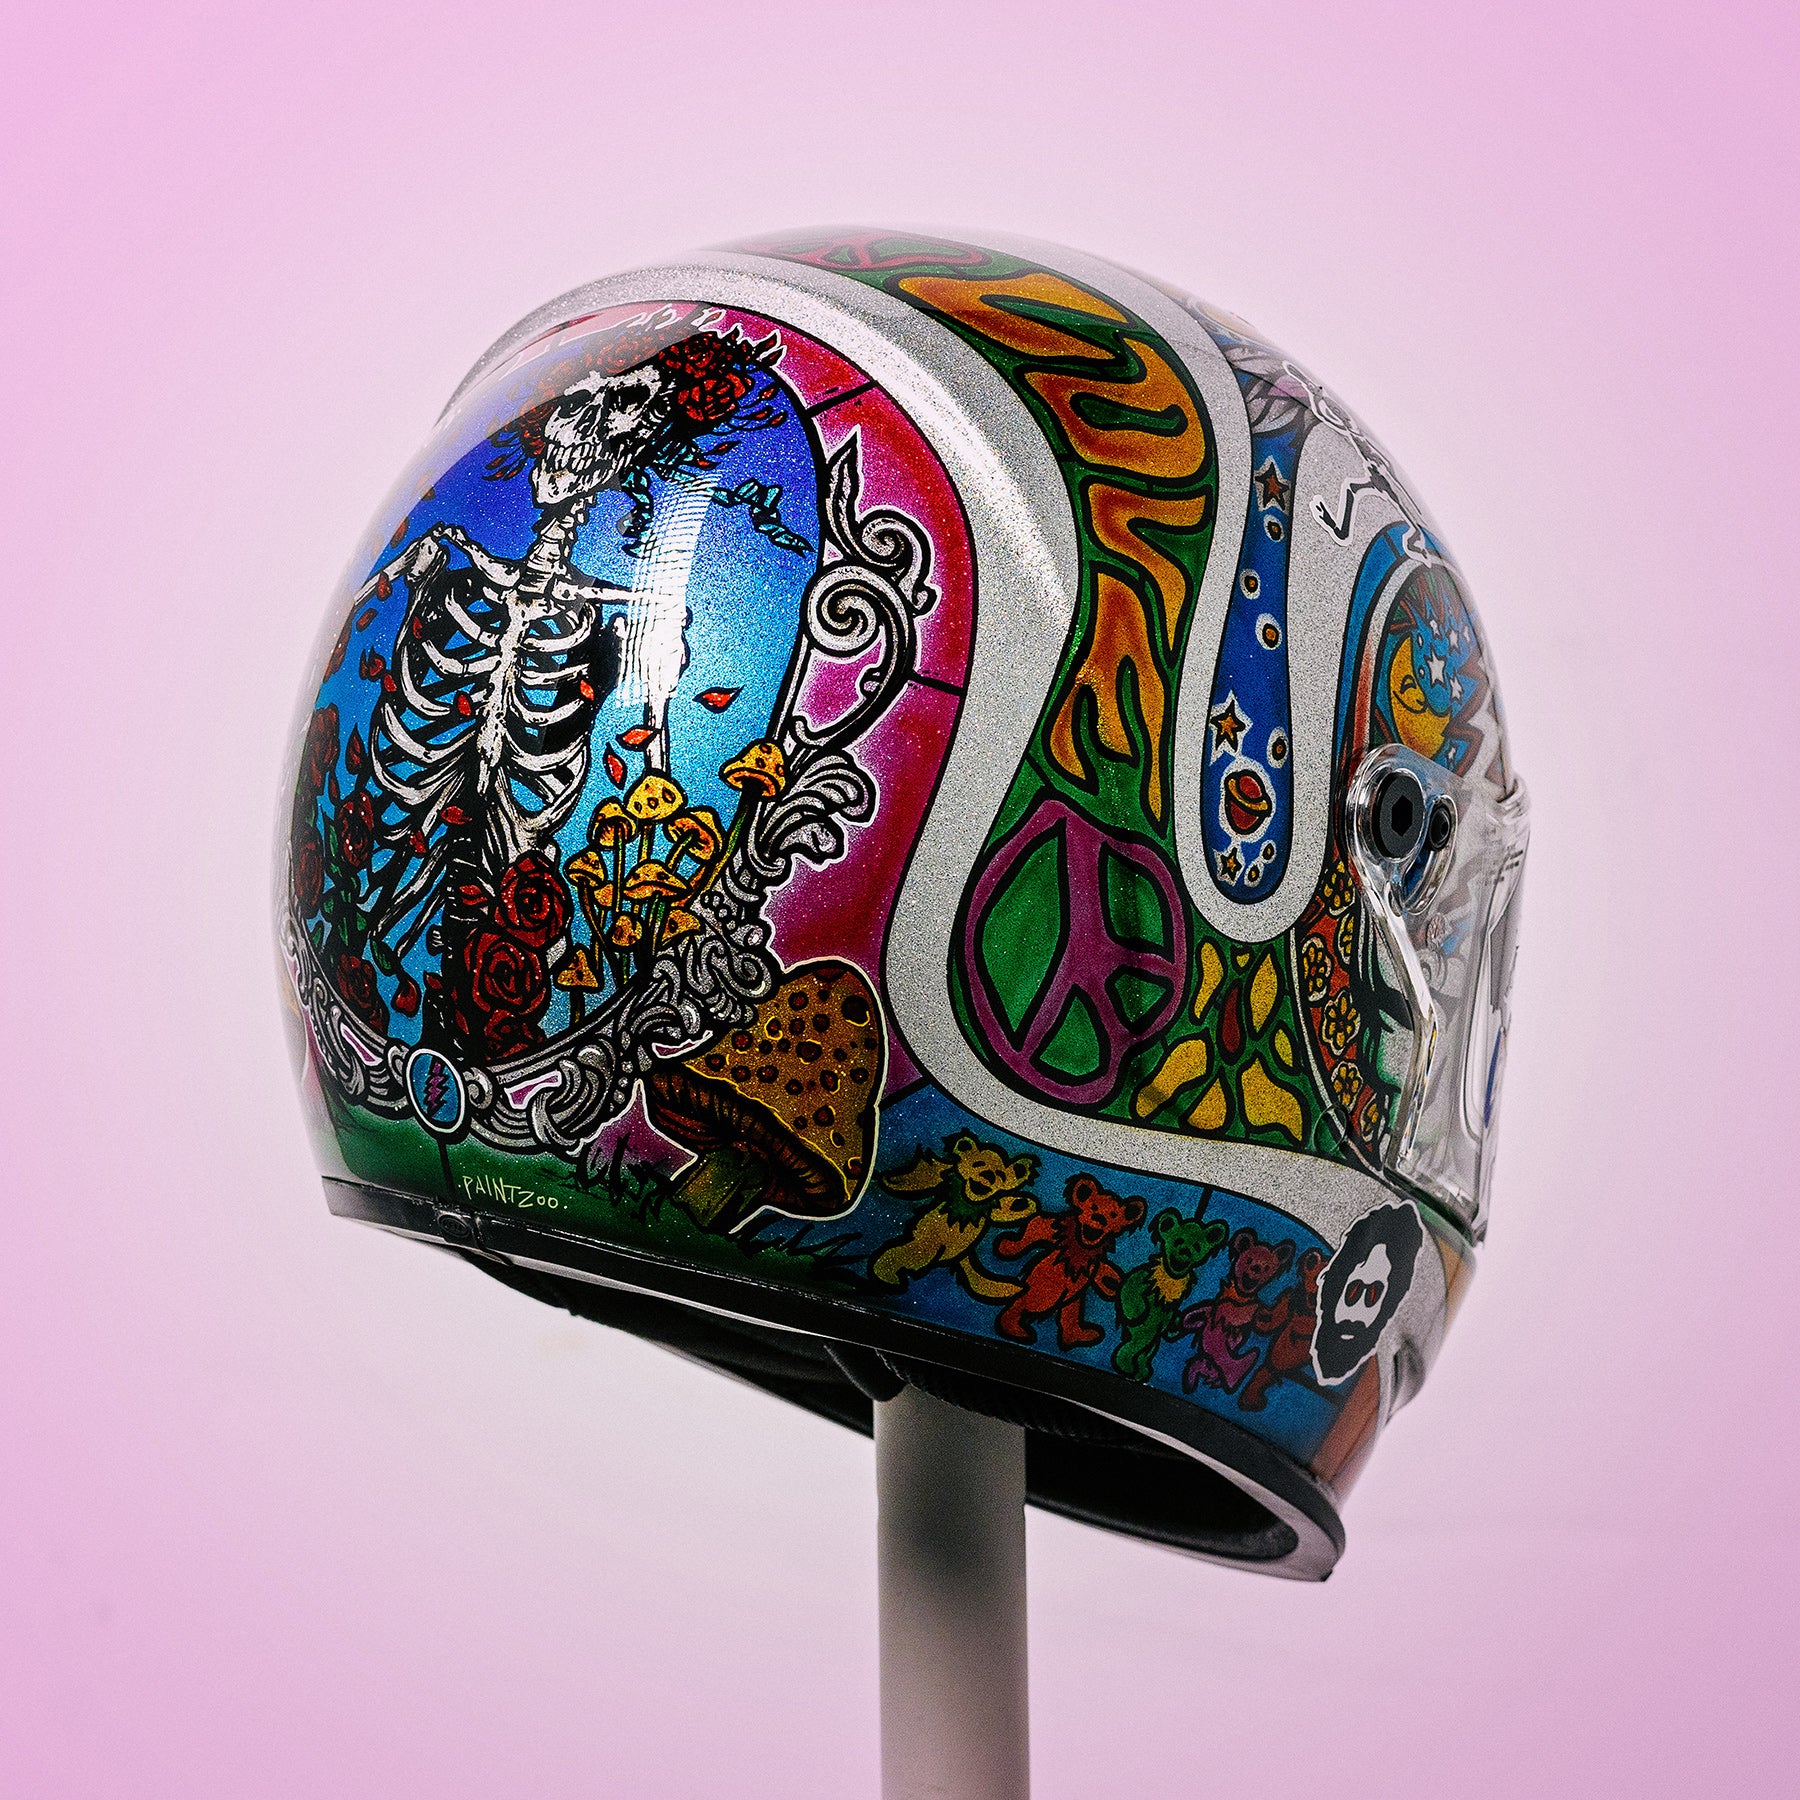 Trippy Ten Helmet Art Show Pittsburgh Franny Drummond Paint Zoo Studios